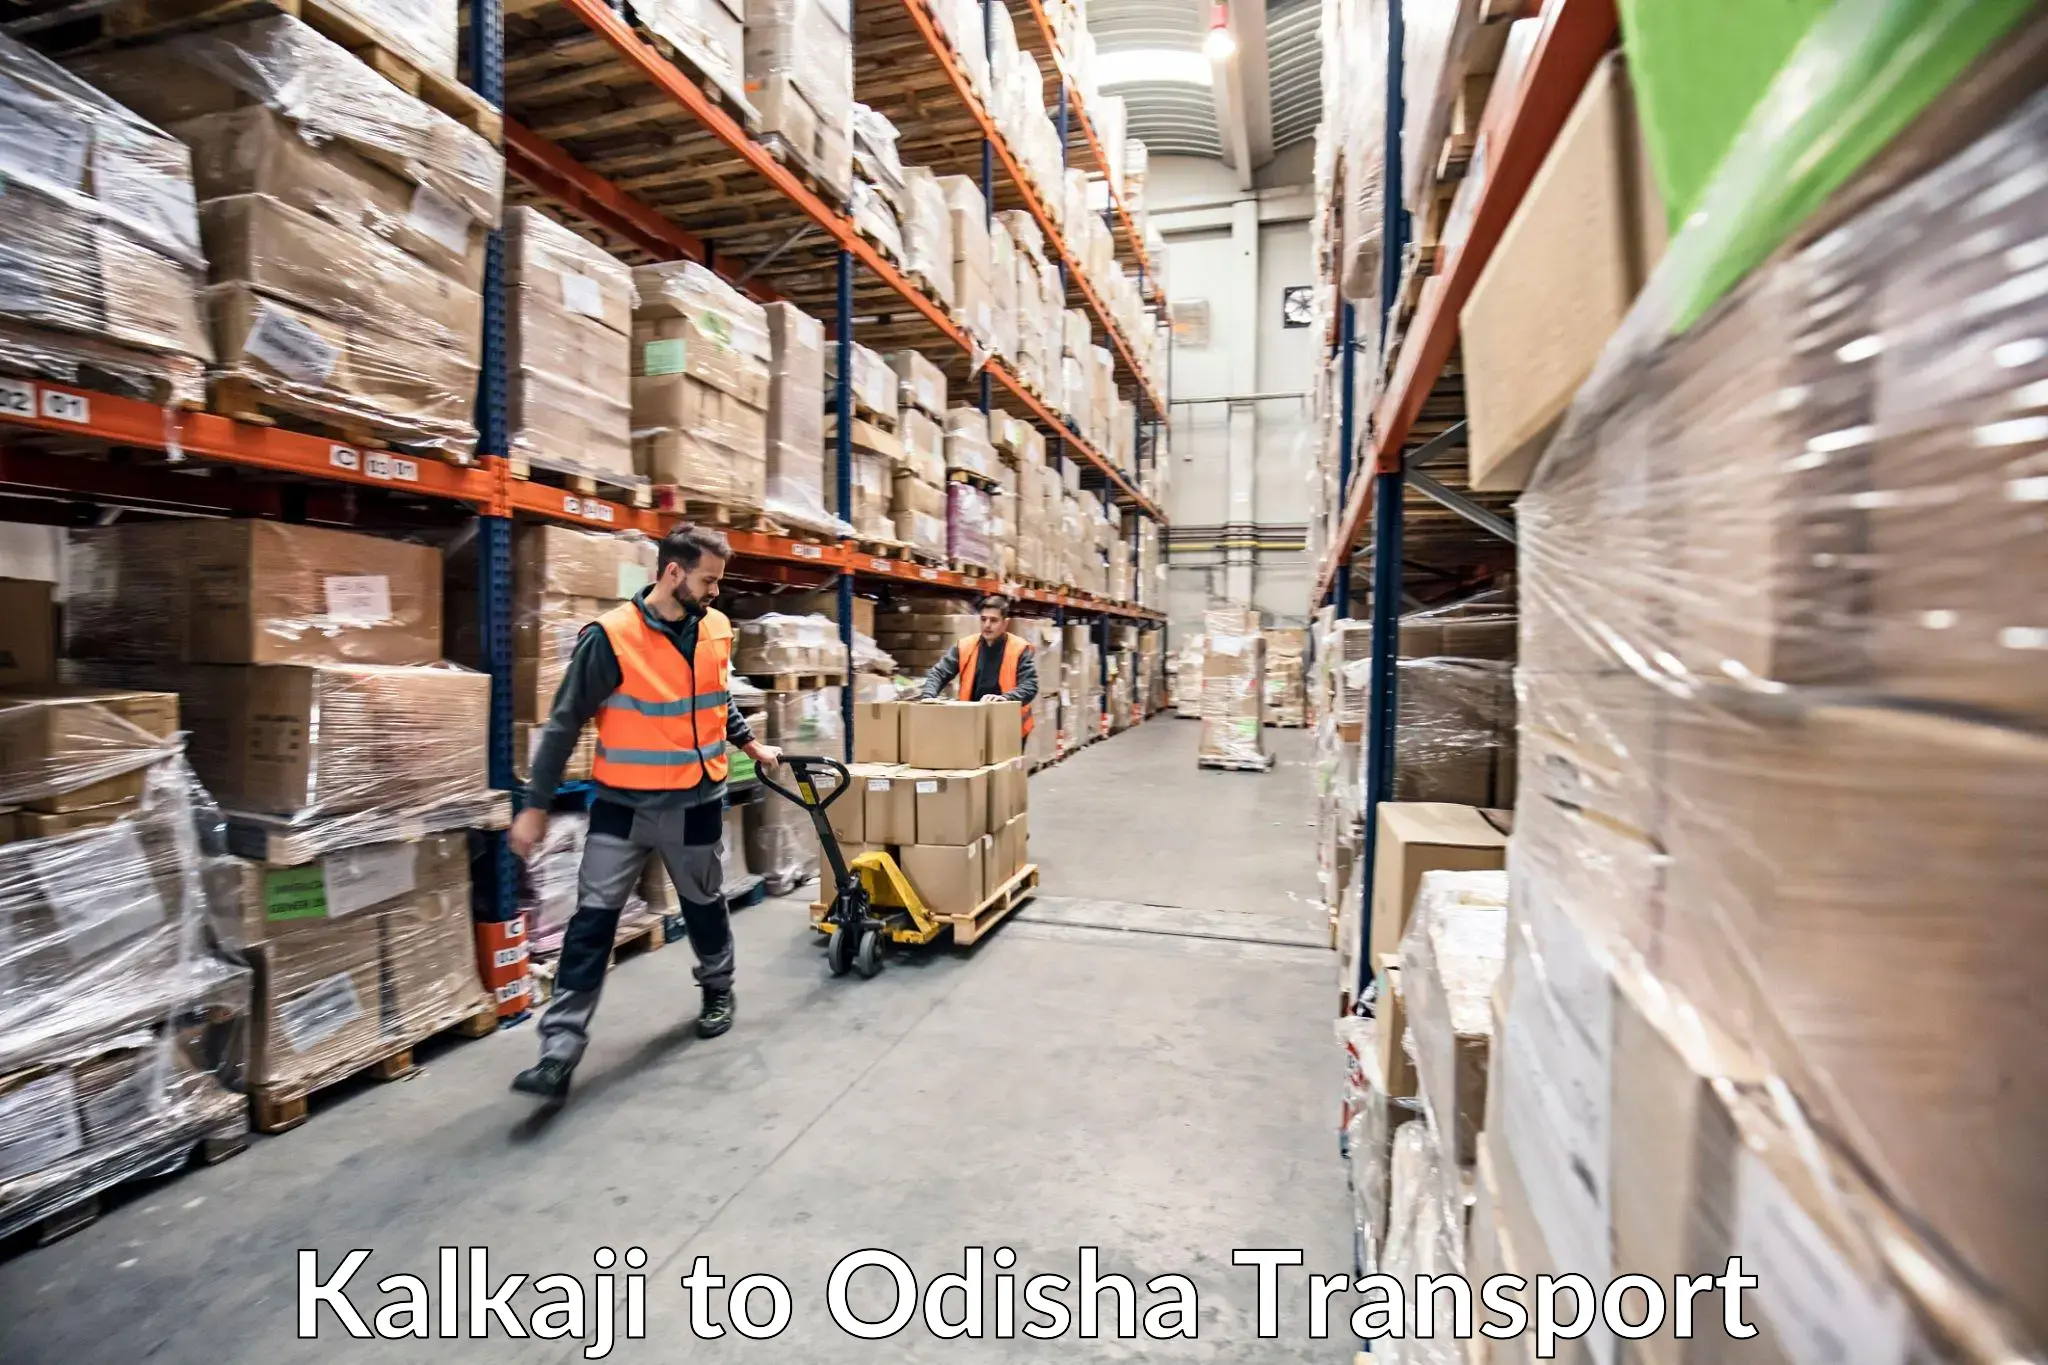 Shipping services Kalkaji to Odisha